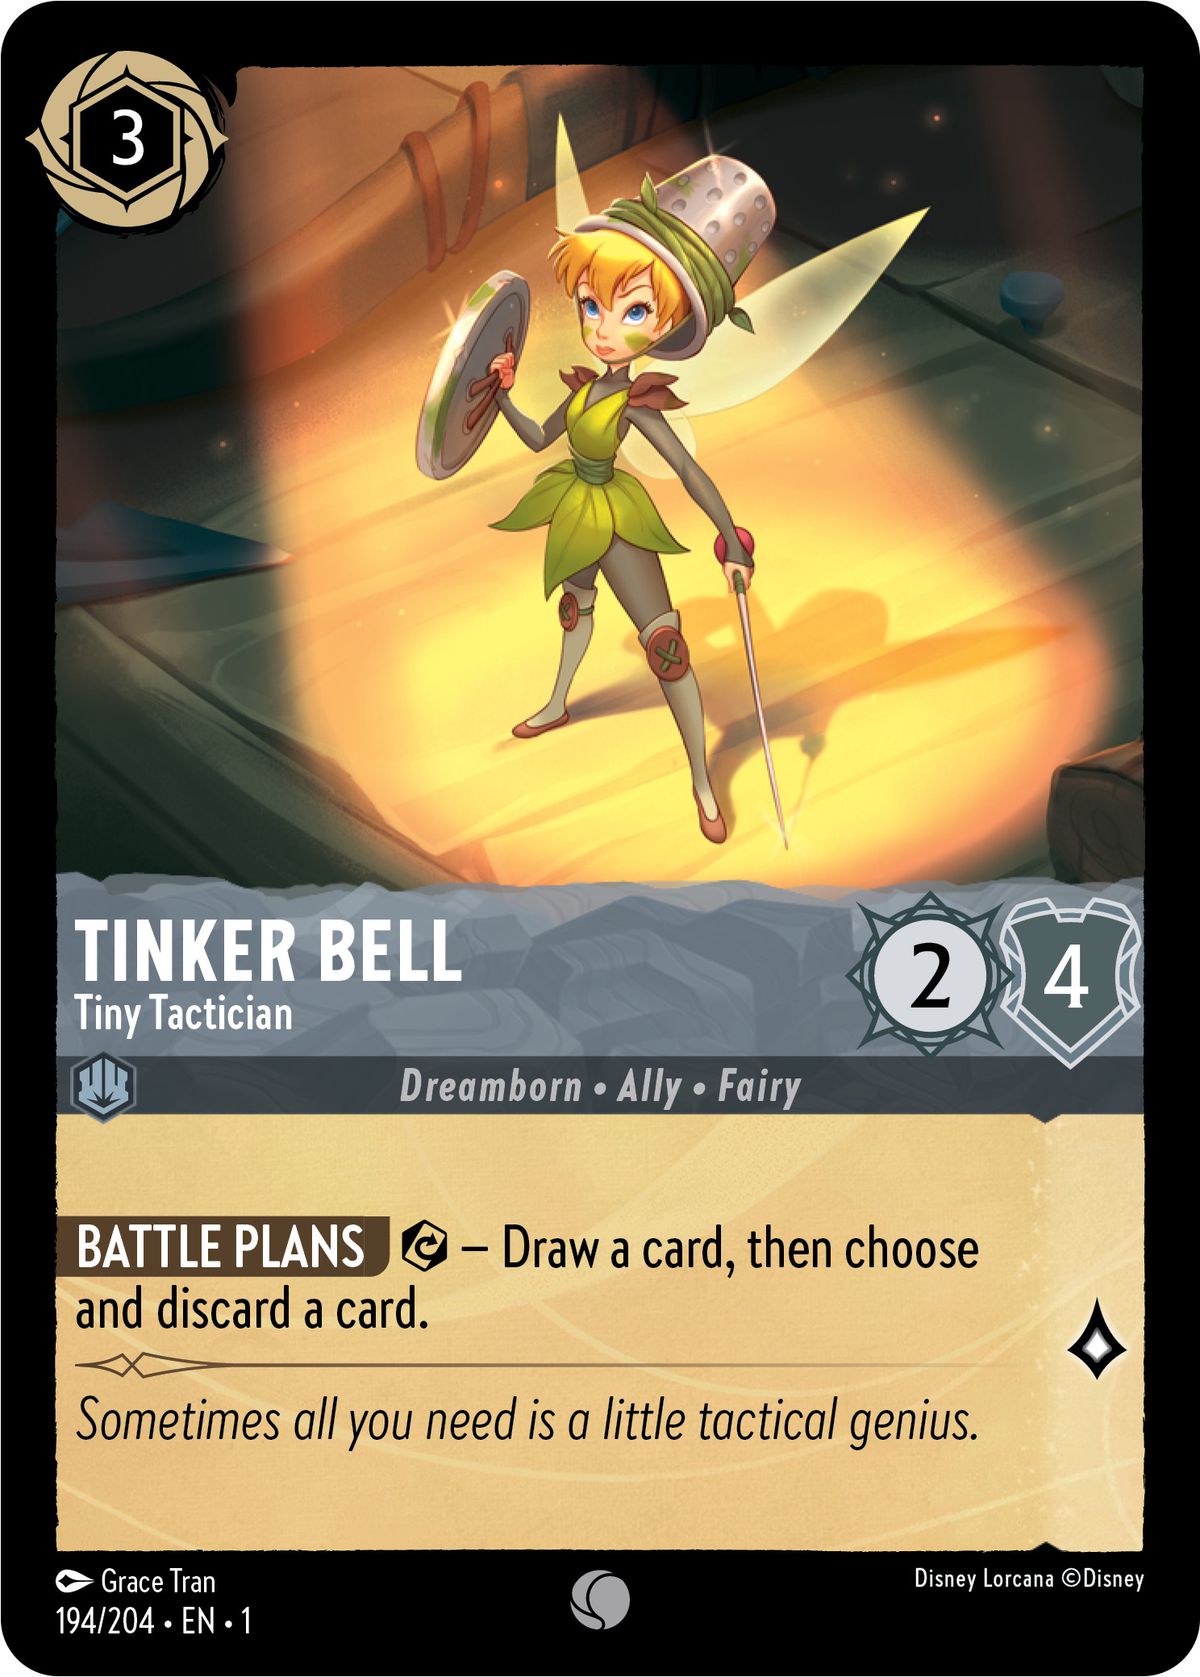 Tinkerbell, petite tacticienne, est une lueur - une dramborn, une alliée, une fée - avec 2/4.  Lorsqu'elle est exercée, elle permet au joueur de piocher une carte, puis de choisir et de défausser une autre carte.  Elle vaut un savoir lors d'une quête.